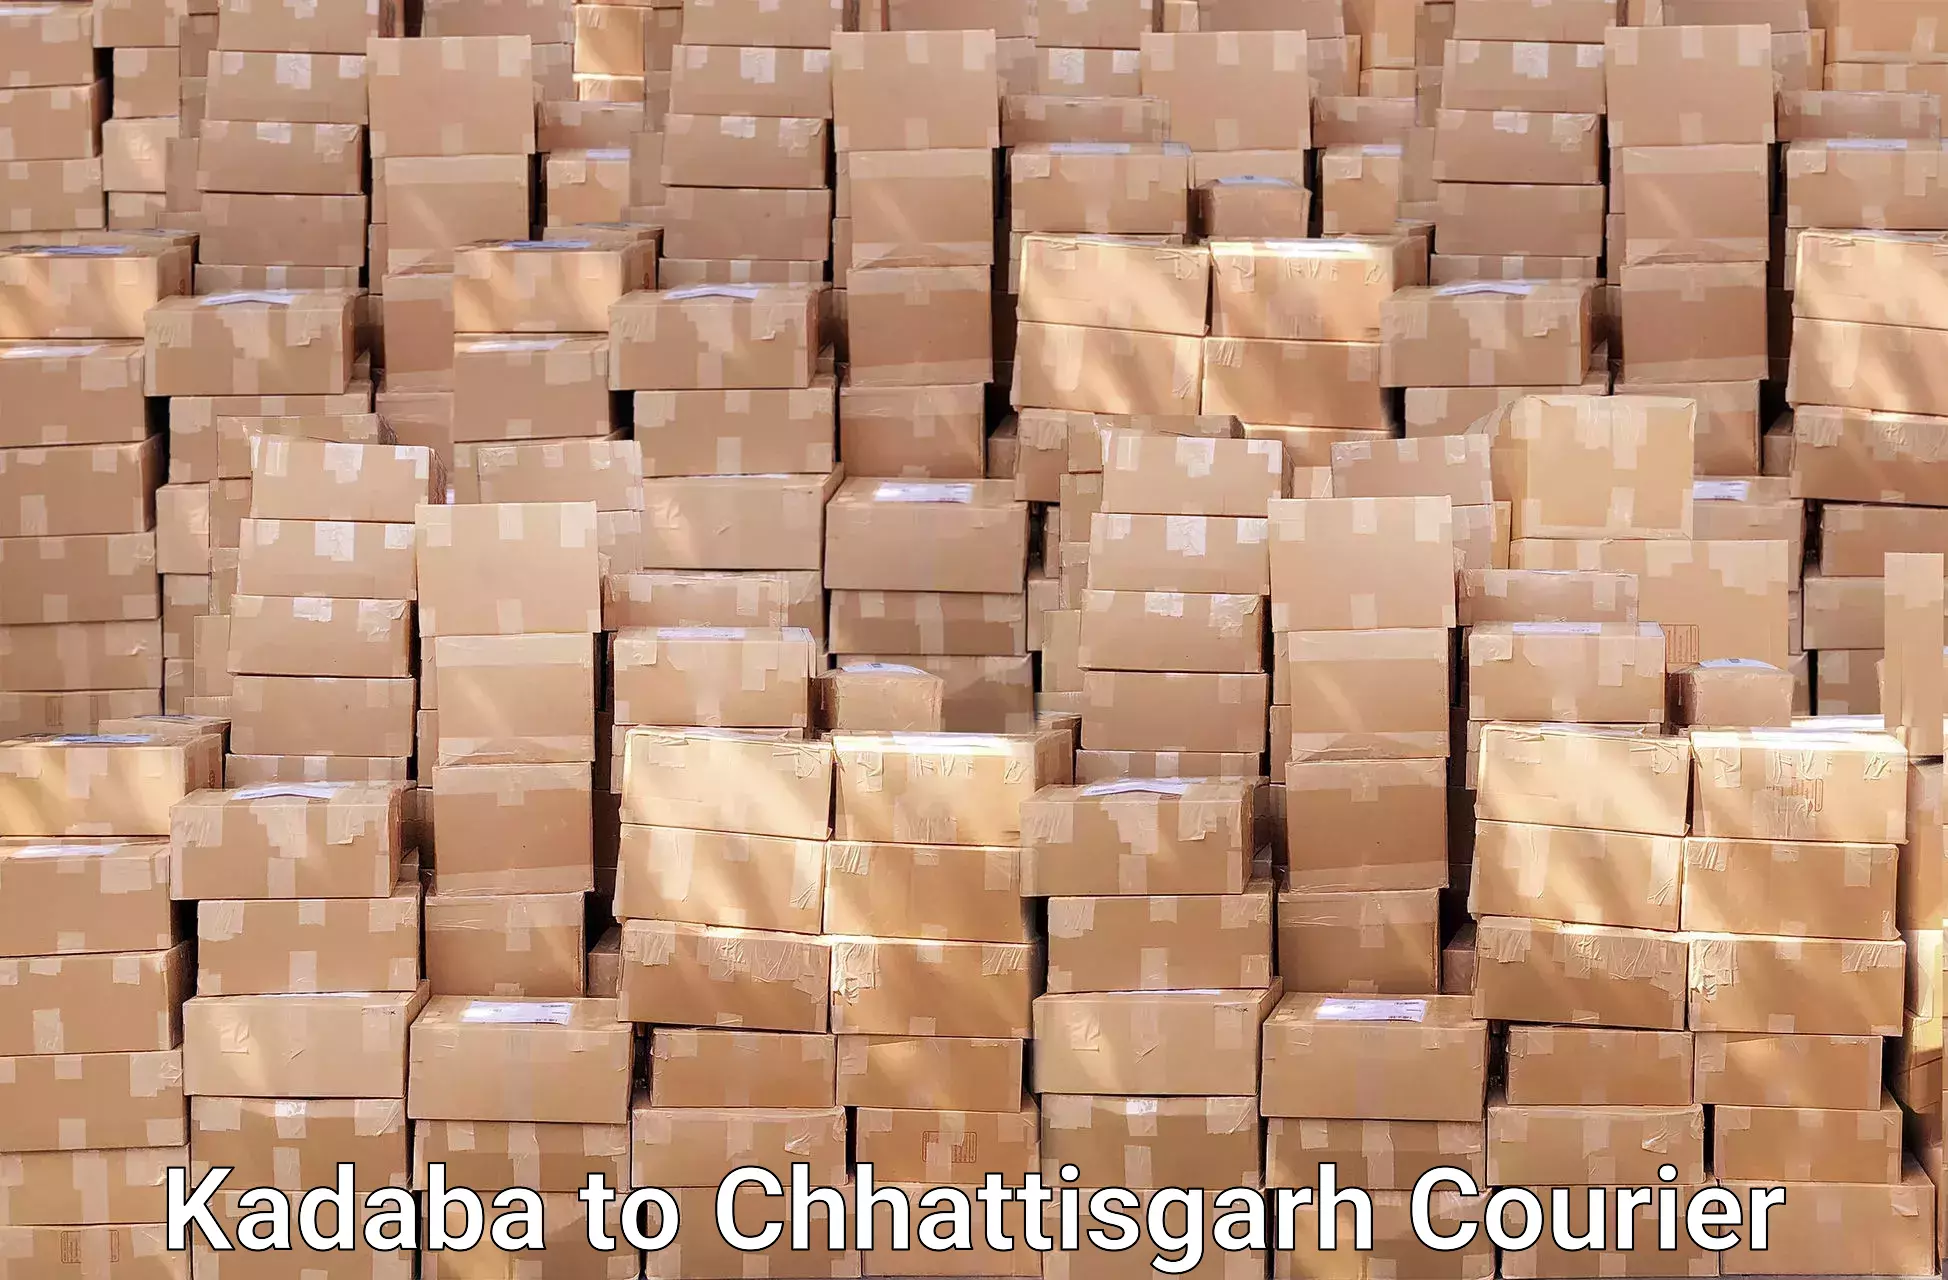 Furniture delivery service Kadaba to Raigarh Chhattisgarh